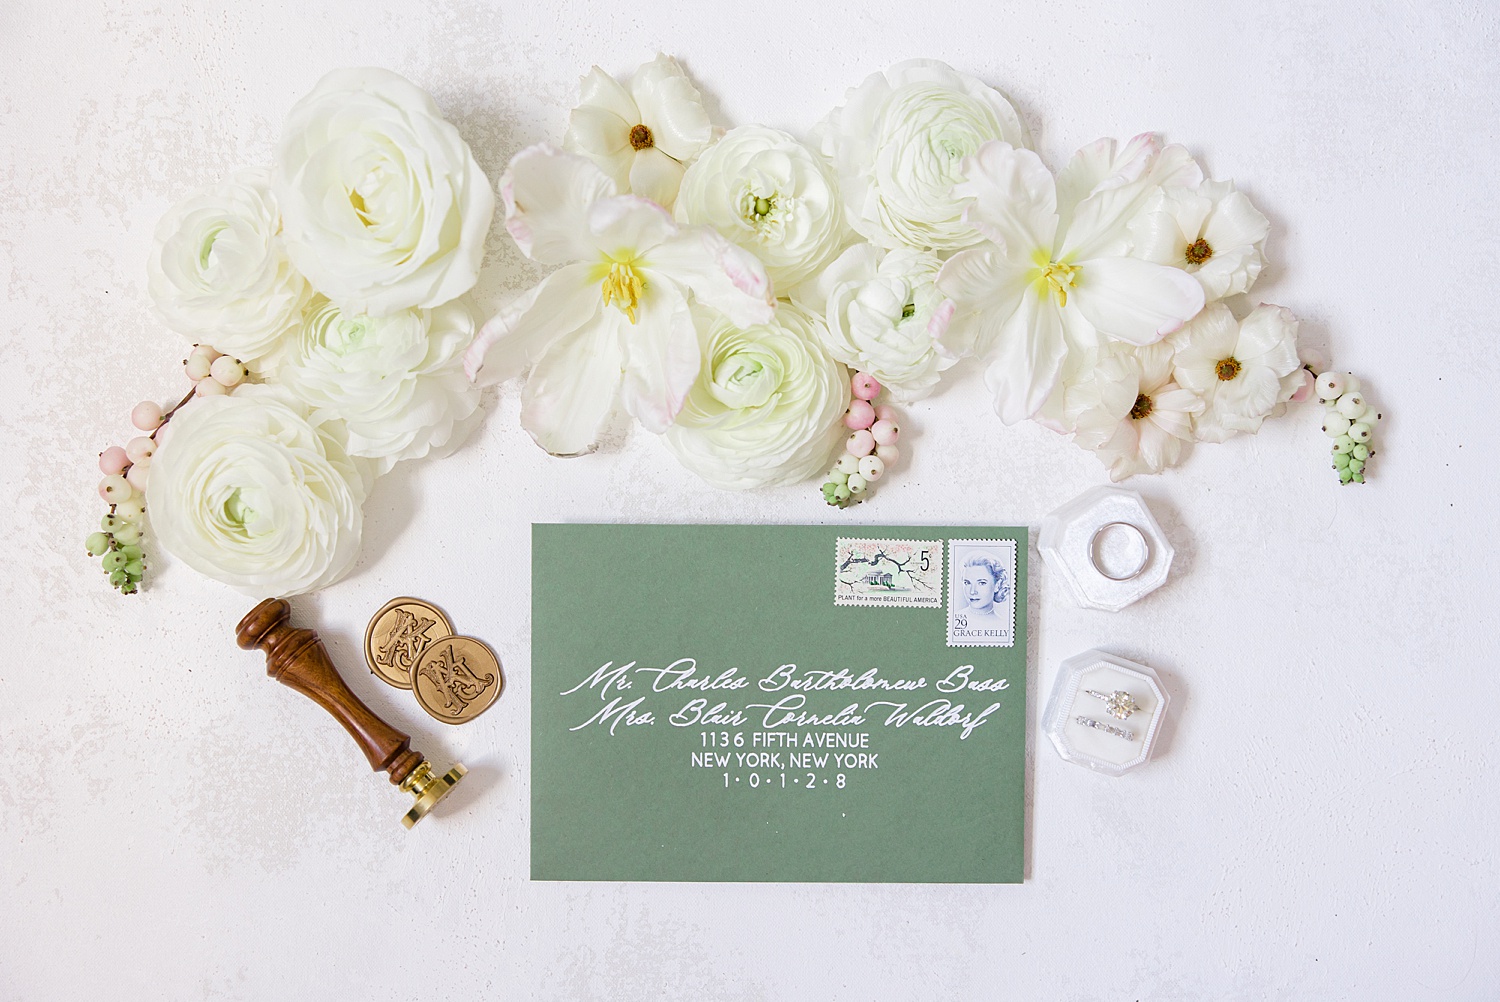 Classic + Romantic Birmingham Wedding invitations and details